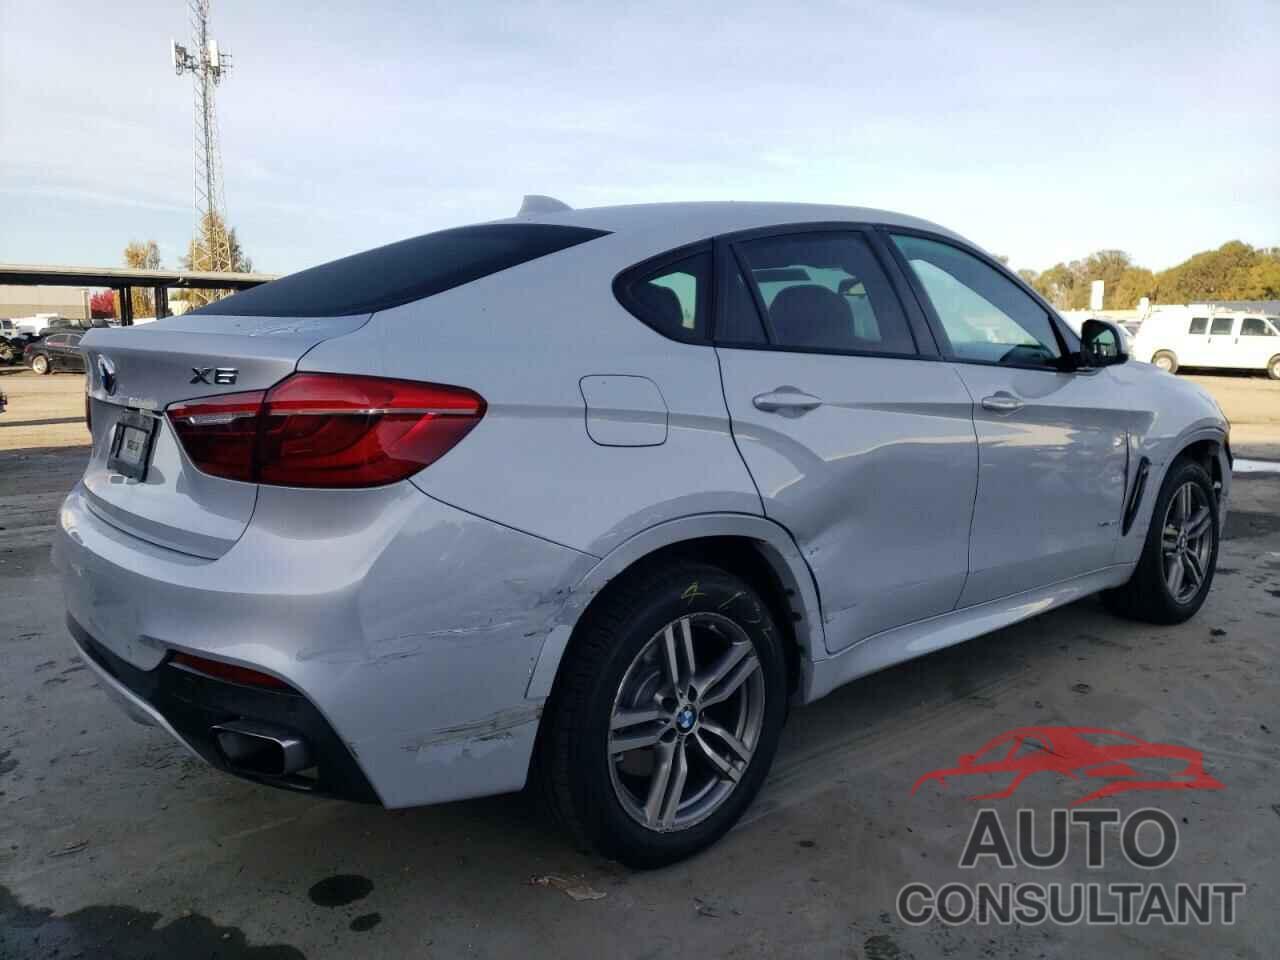 BMW X6 2016 - 5UXKU6C51G0R33762